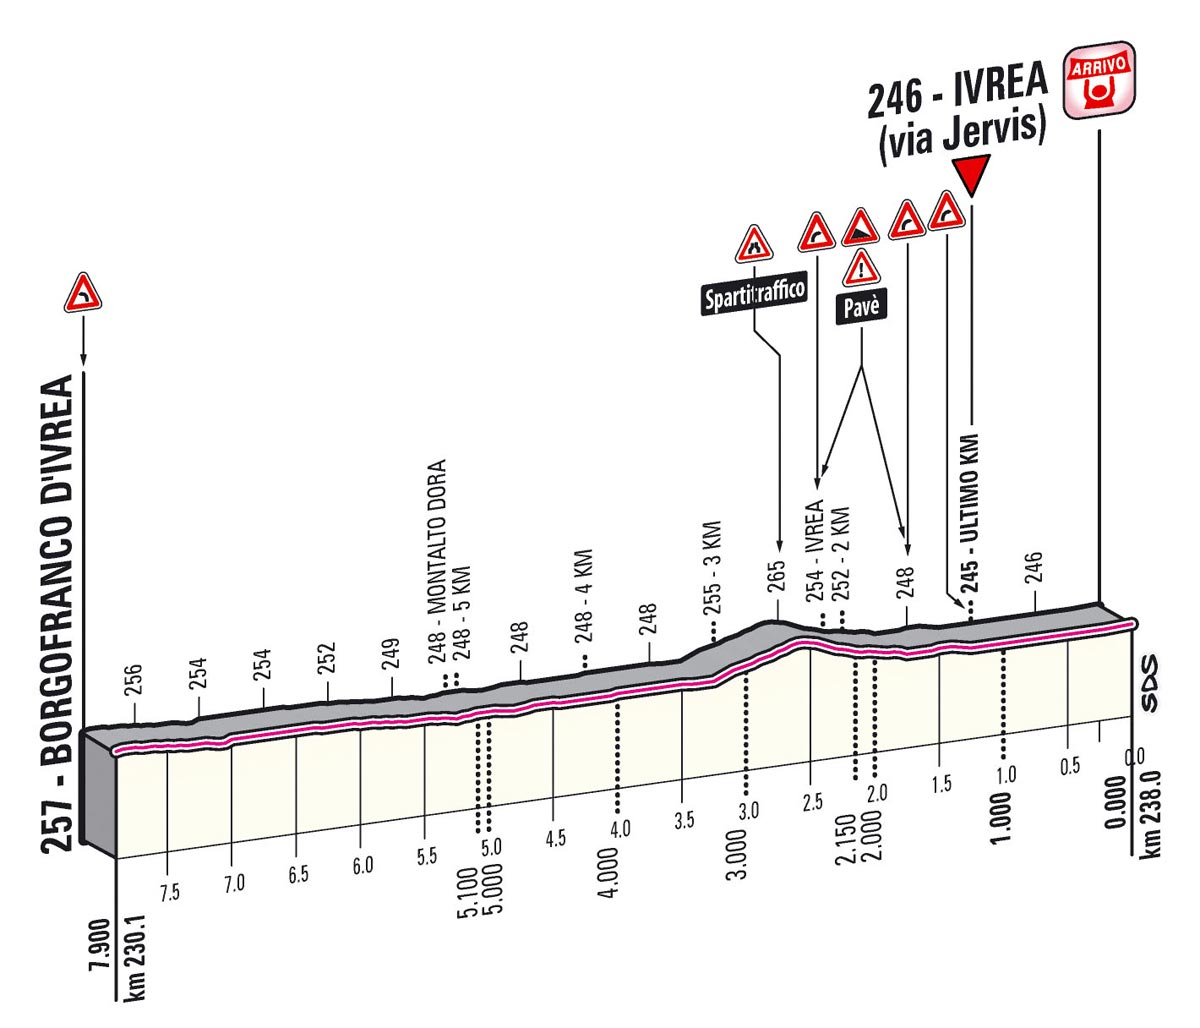 Giro d'Italia 2013 stage 16 last kms